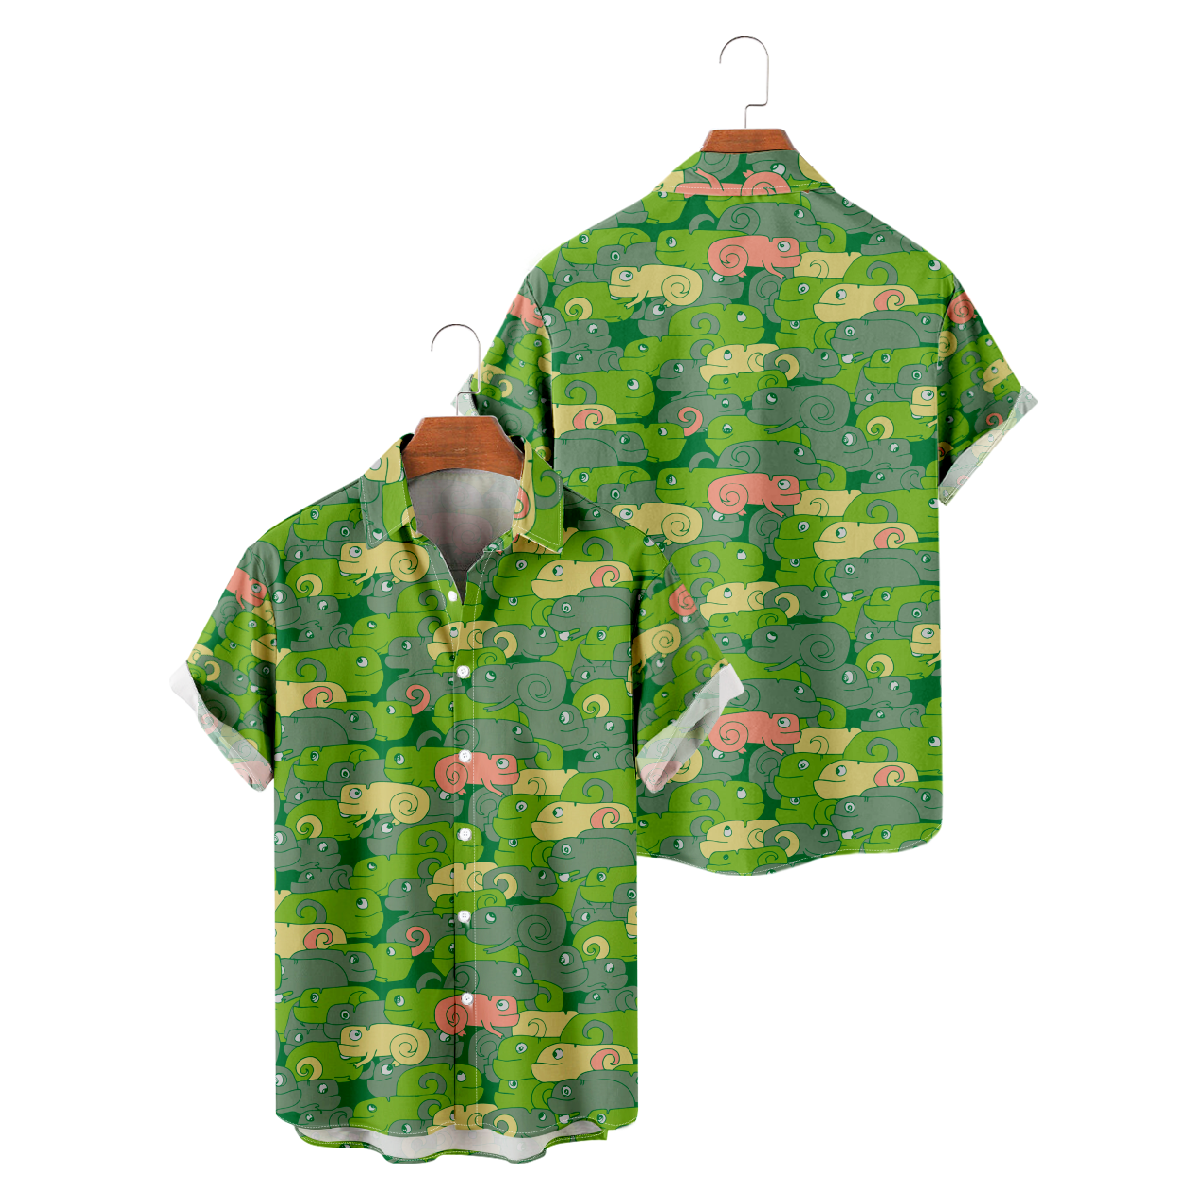 Chameleon Skin Pattern Print Button Up Shirt Mens Hawaiian Shirt Short Sleeve Allover Print Regular Fit